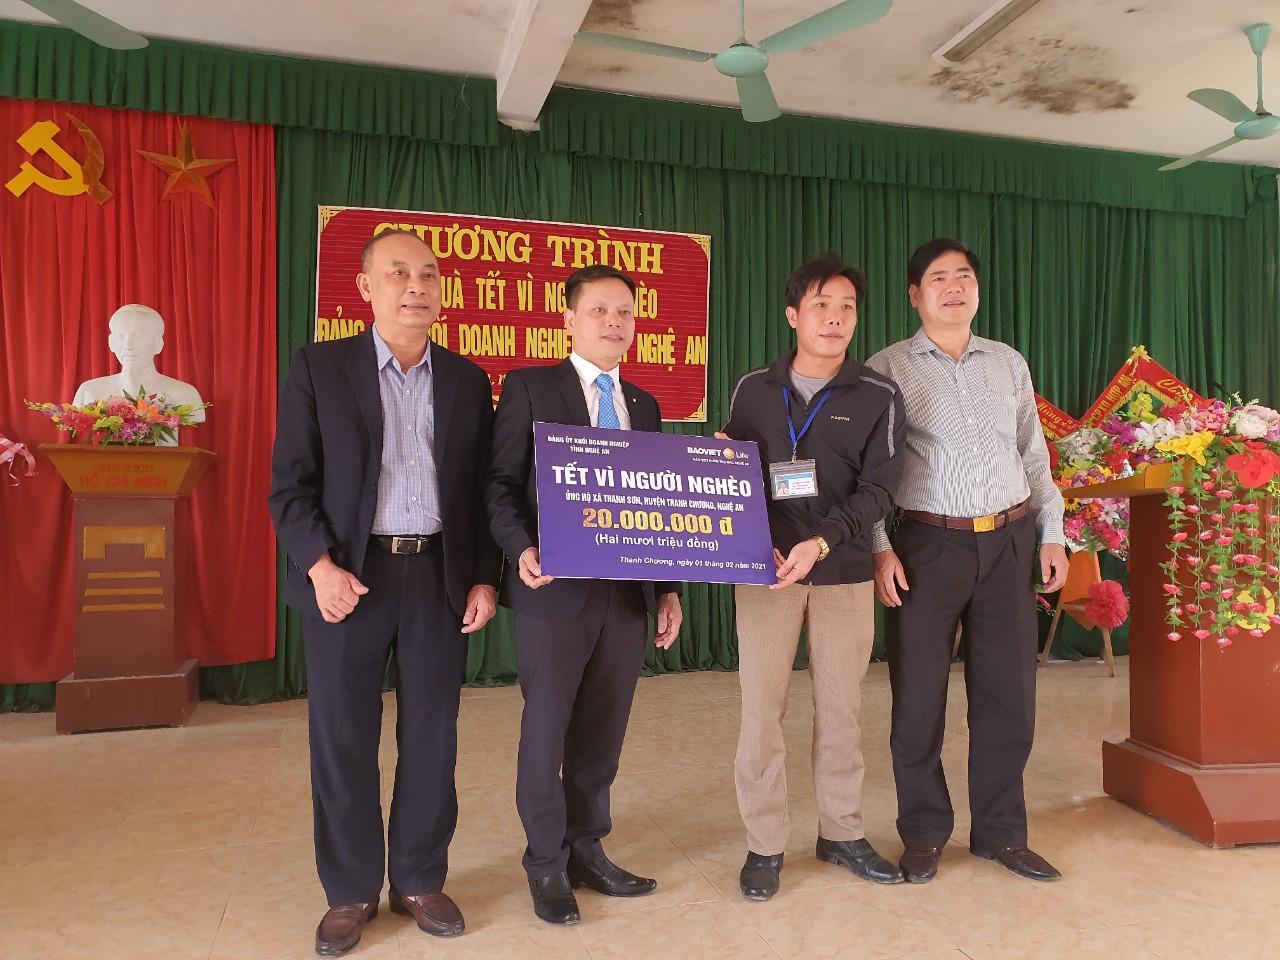  Đảng ủy Khối và lãnh đạo Công ty Bảo Việt nhân thọ Bắc Nghệ An tặng quà tại xã Thanh Sơn - Thanh Chương